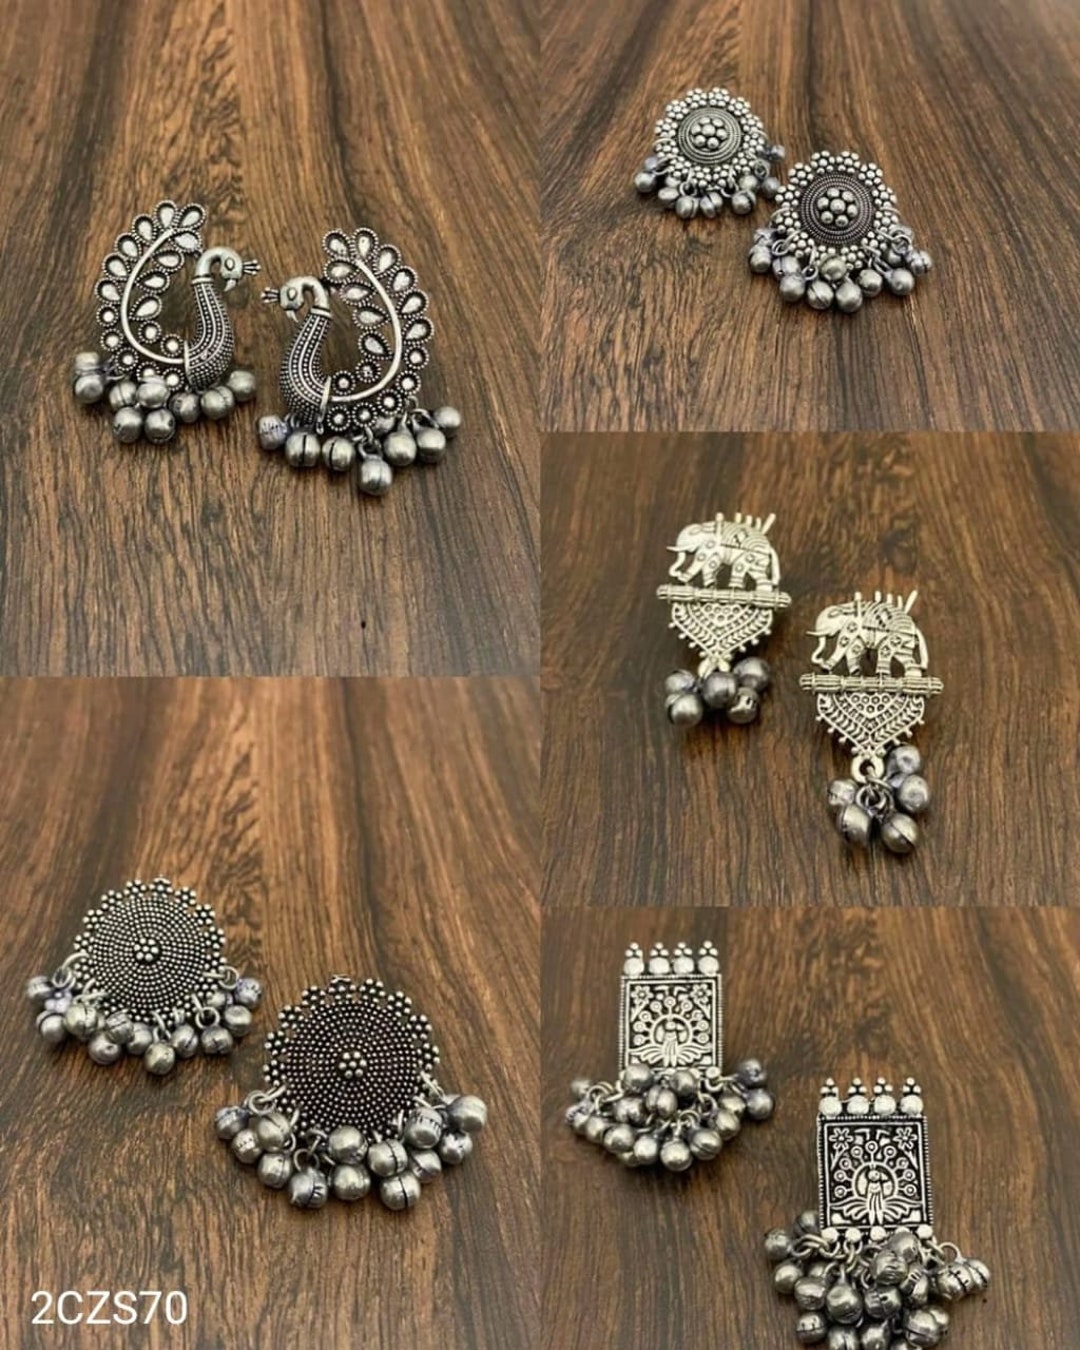 Beautiful Cage Scripted Jhumka Earrings, Oxidised Earrings With Pearls,long  Earrings, Indian Earrings, Bollywood Celebrity Earrings, Gifts - Etsy |  Silver jewelry fashion, Celebrities earrings, Long pearl earrings